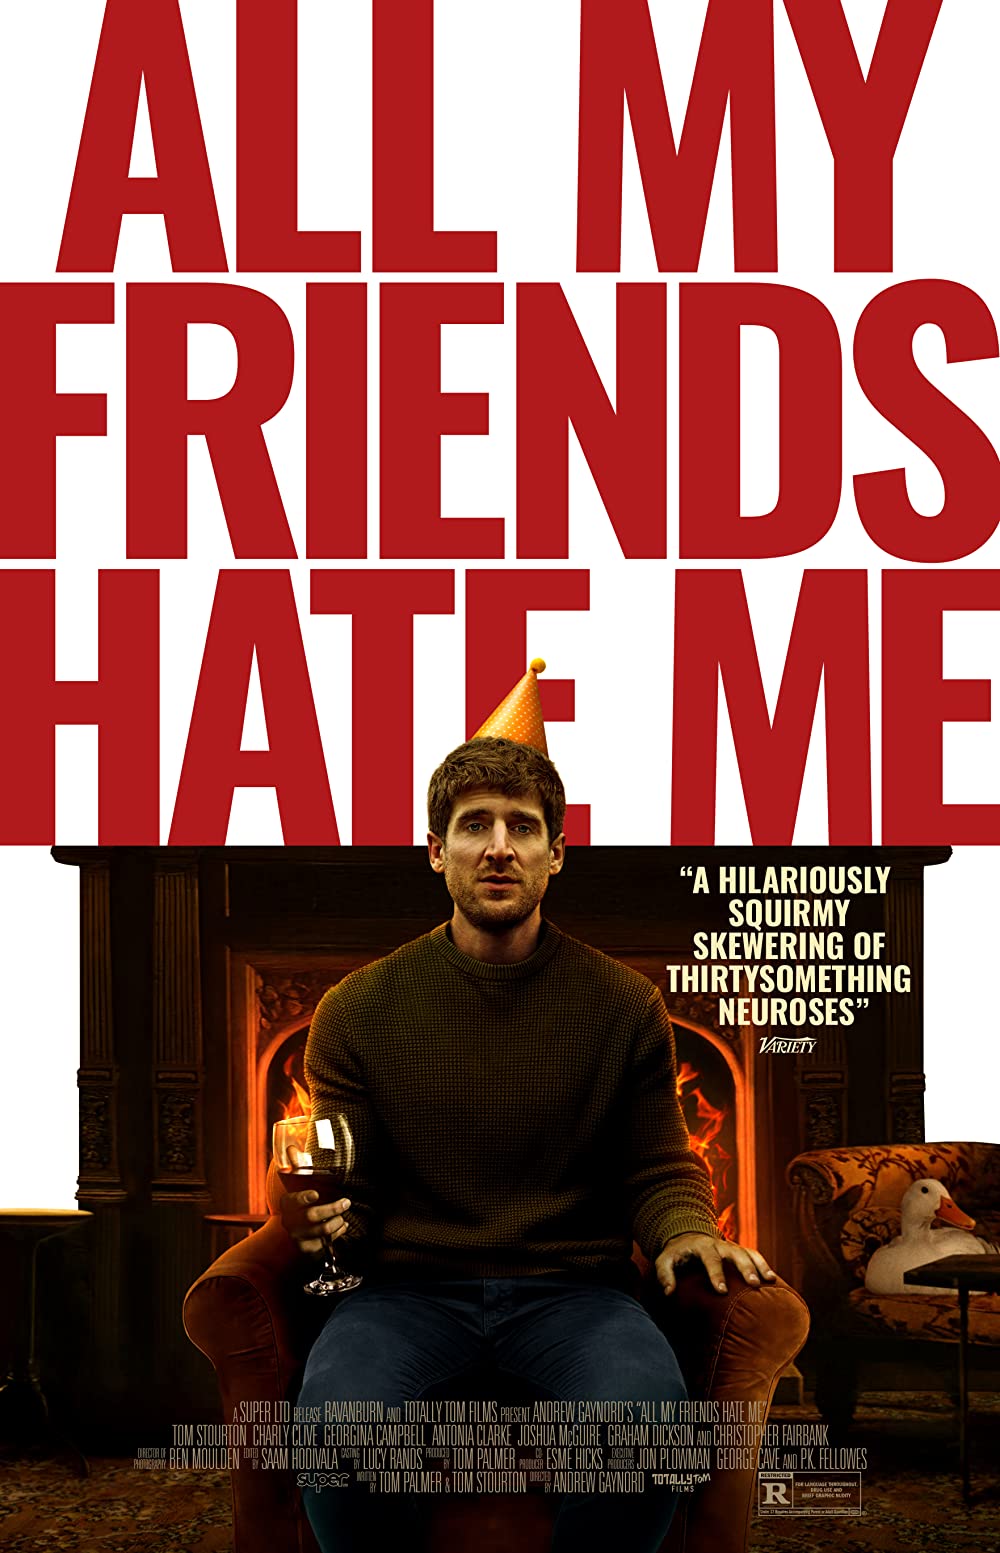 Tất Cả Bạn Bè Của Tôi Đều Ghét Tôi – All My Friends Hate Me